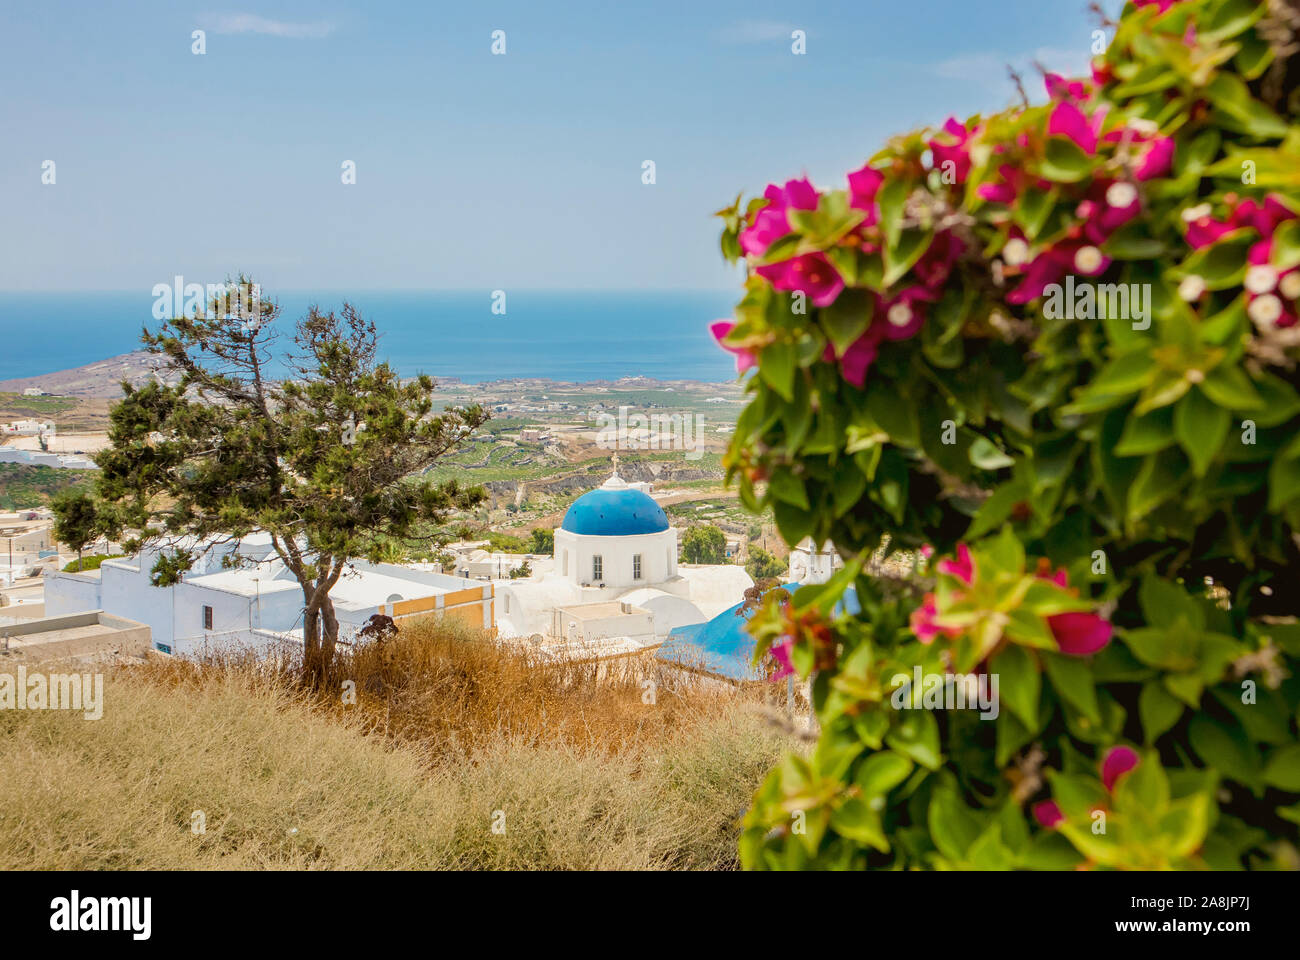 Vue sur le village Pyrgos Blue Dome église sur l'île de Santorin, la Grèce, le paysage vert et la mer Egée sur l'arrière-plan. Banque D'Images